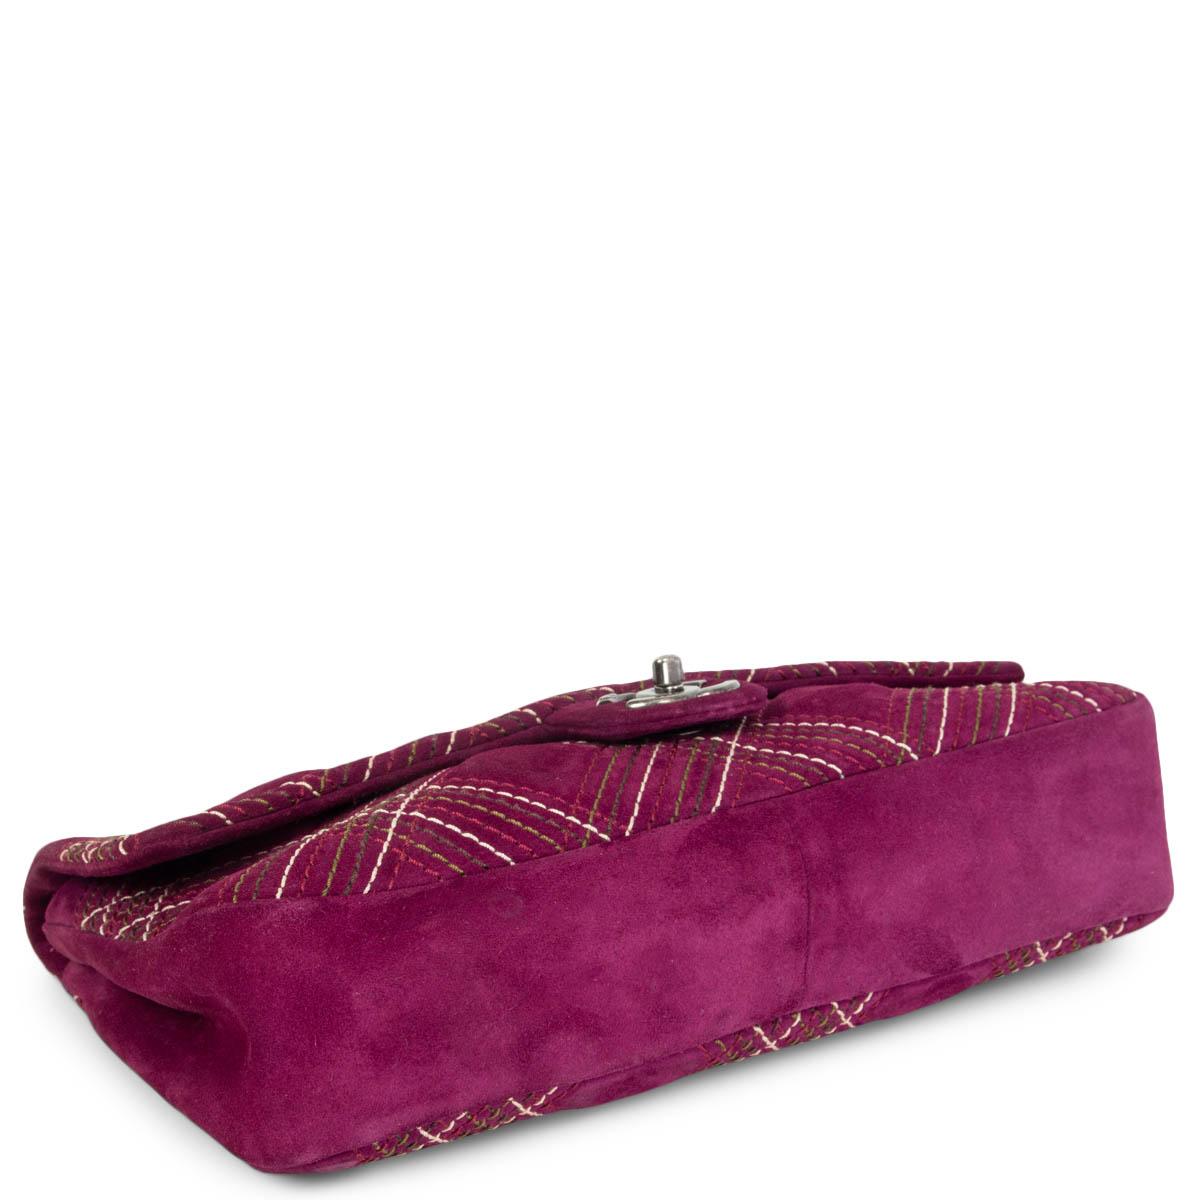 Women's CHANLE purple suede 2013 EDINBURGH SALTIRE MEDIUM FLAP Shoulder Bag 13A For Sale